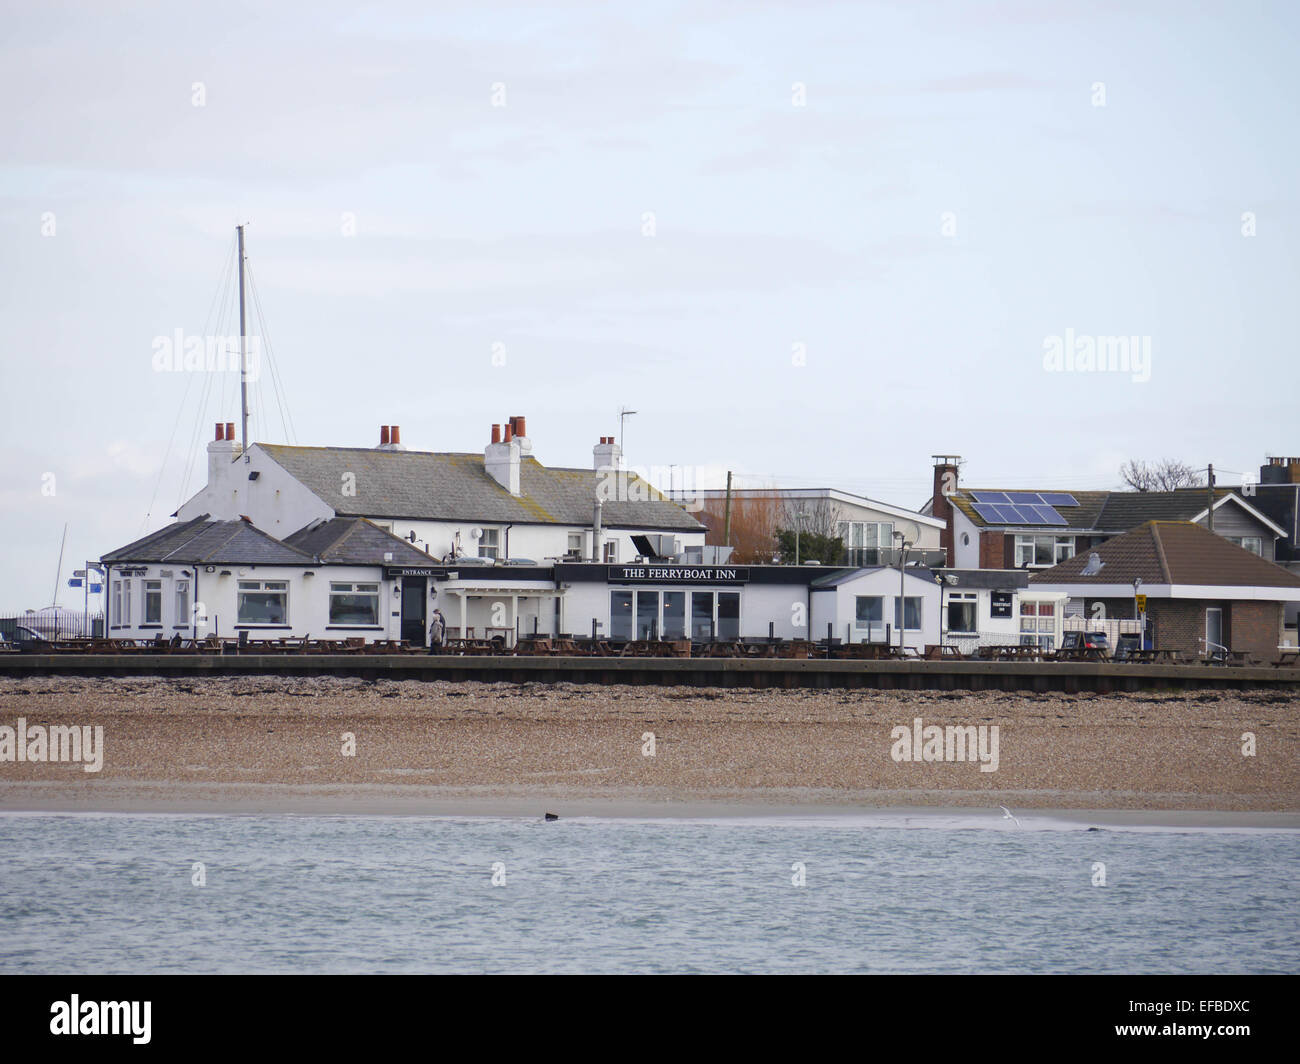 El ferry boat Public House Inn y restaurante en Hayling Island, Hampshire, Inglaterra Foto de stock